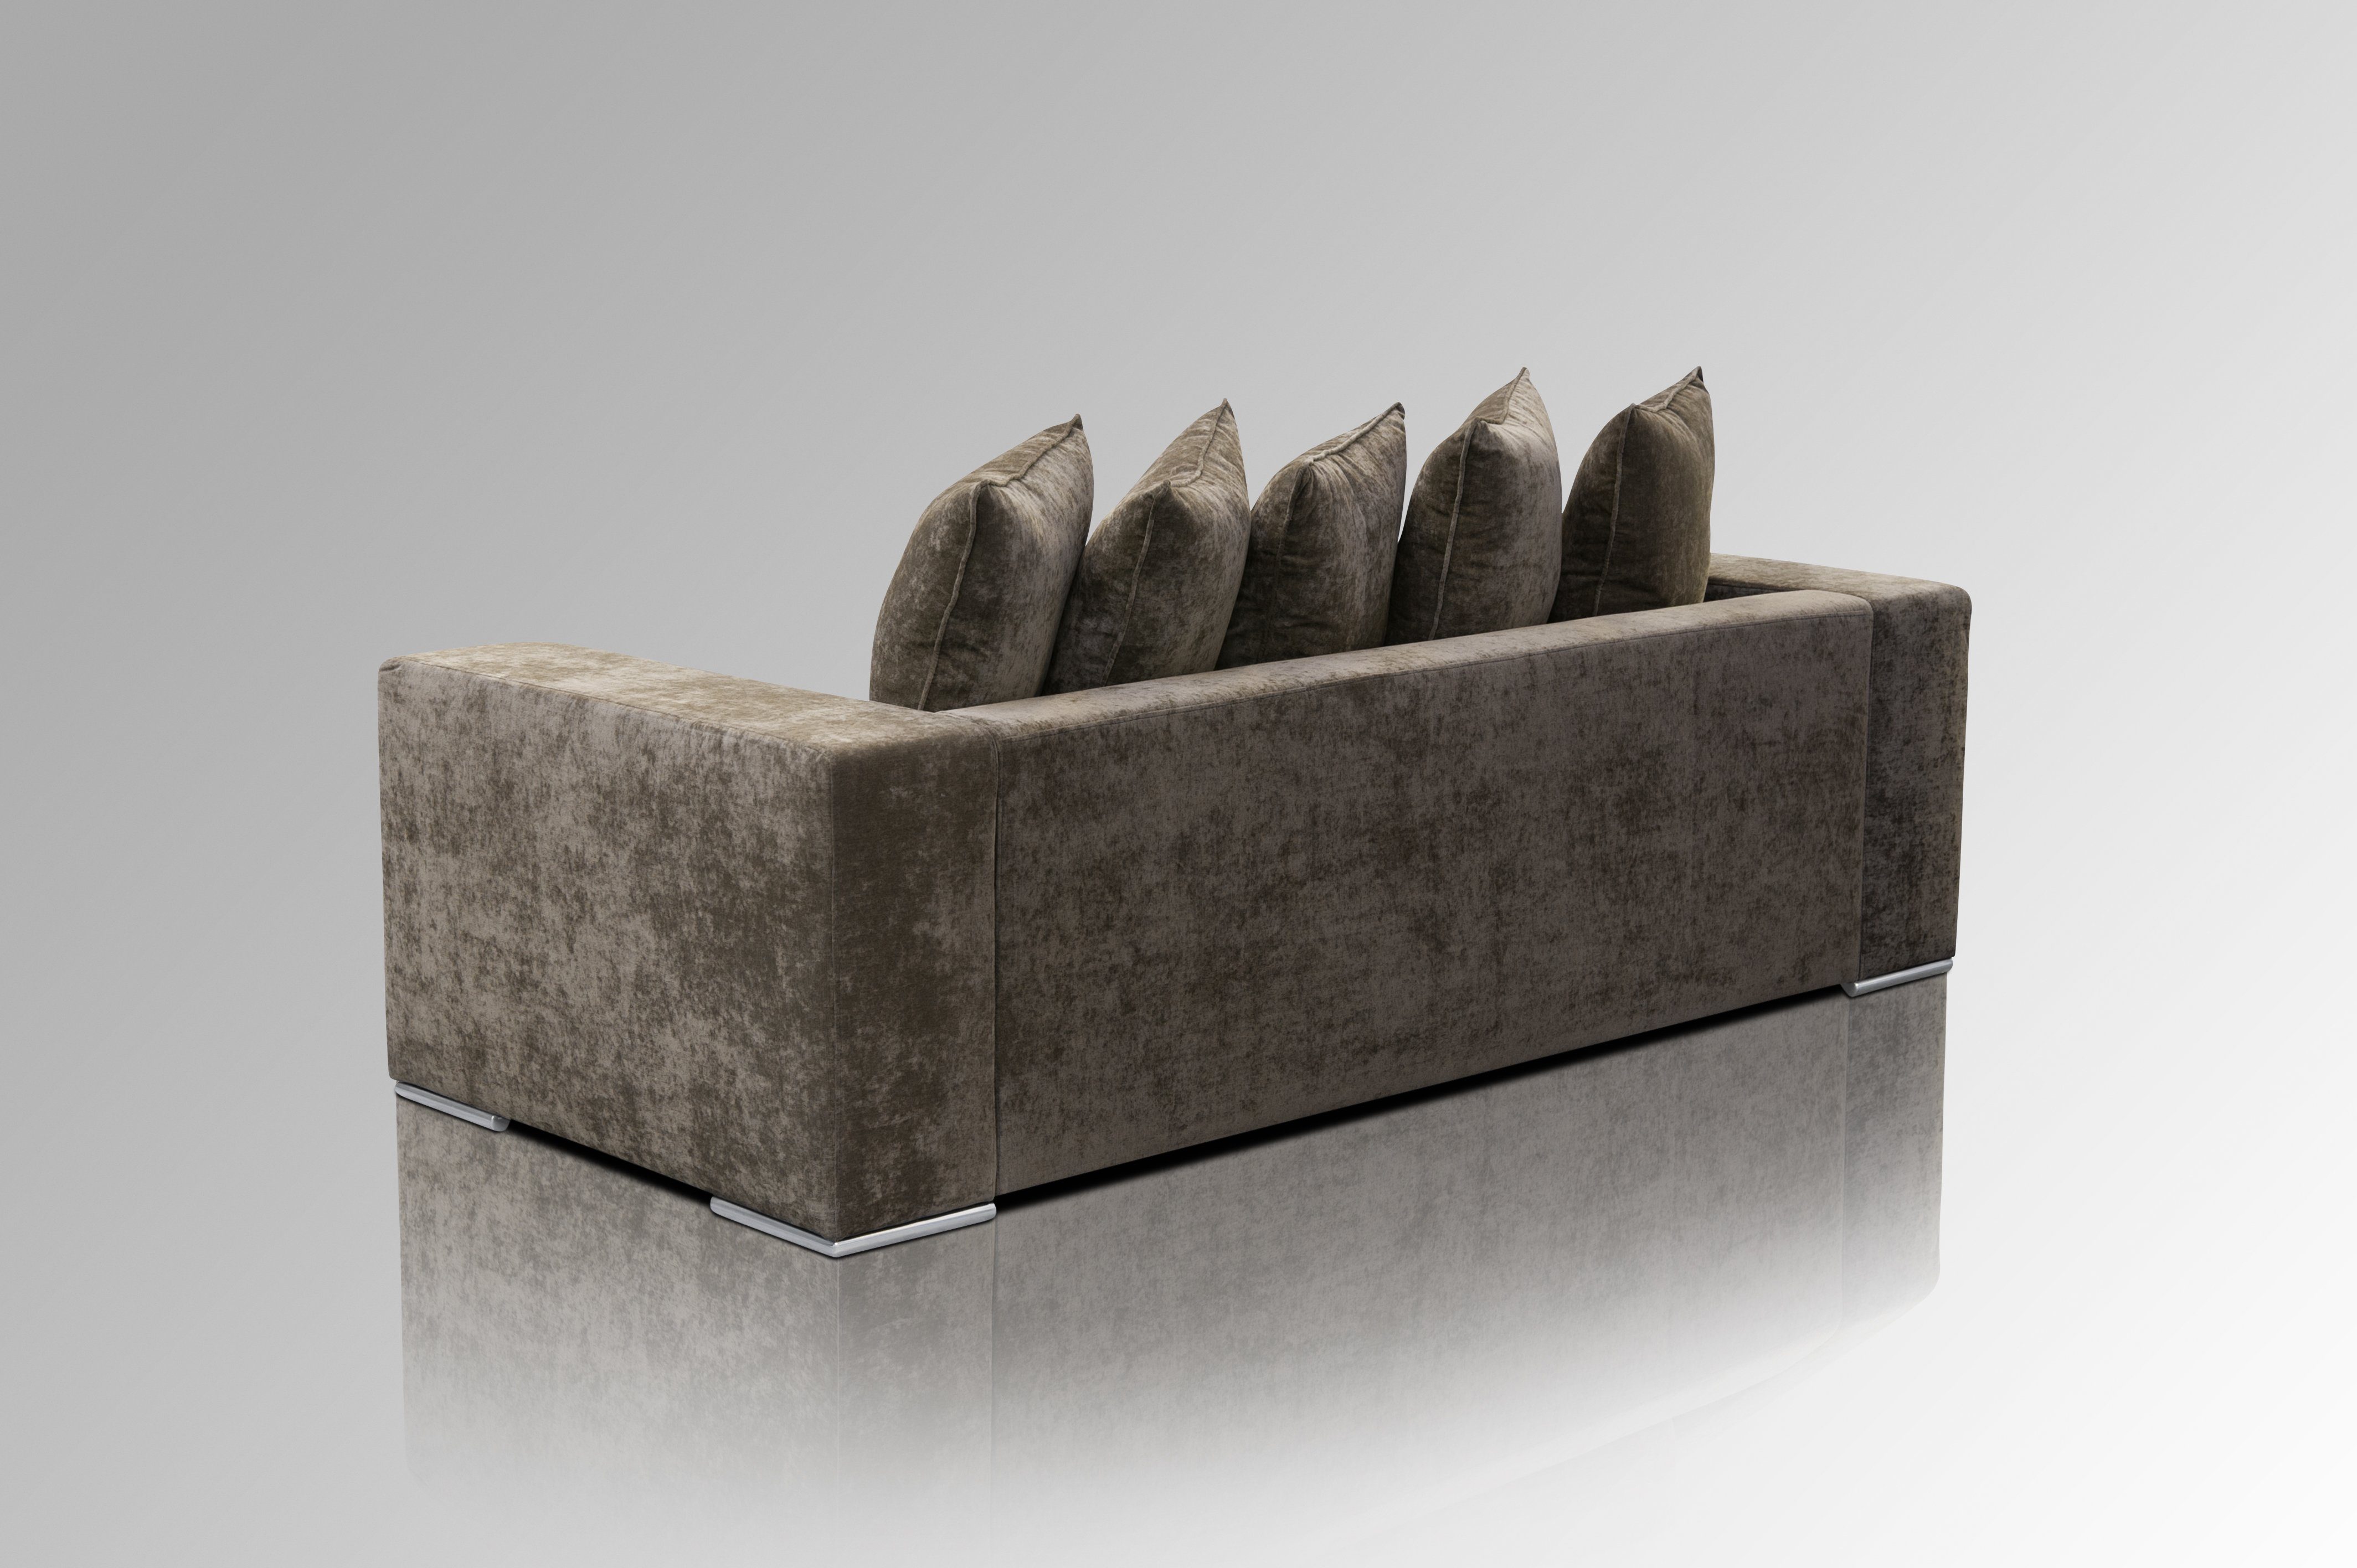 Sitzer trifft Design AMARIS Qualität Braun 2.25m, 3 Sofa Couch Elements 4 Samt 'Cooper' Größen, Woll-Bezug, od.